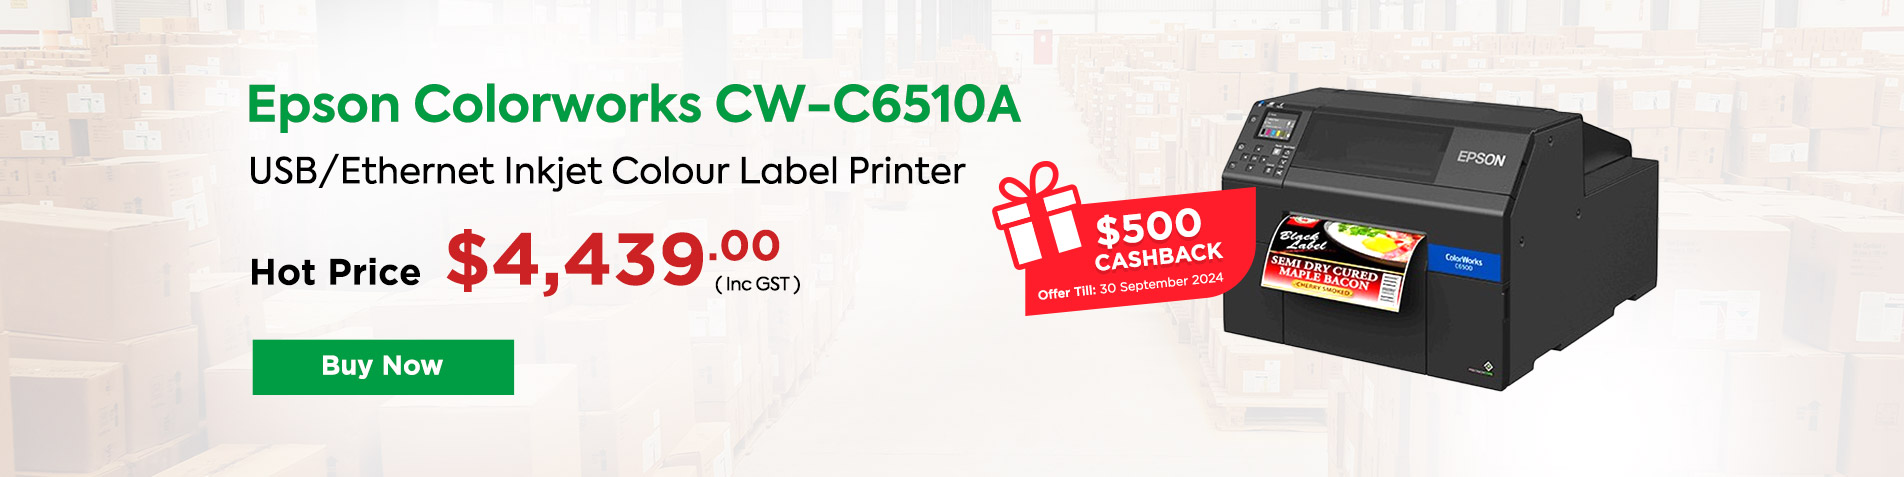 CW-C6510A